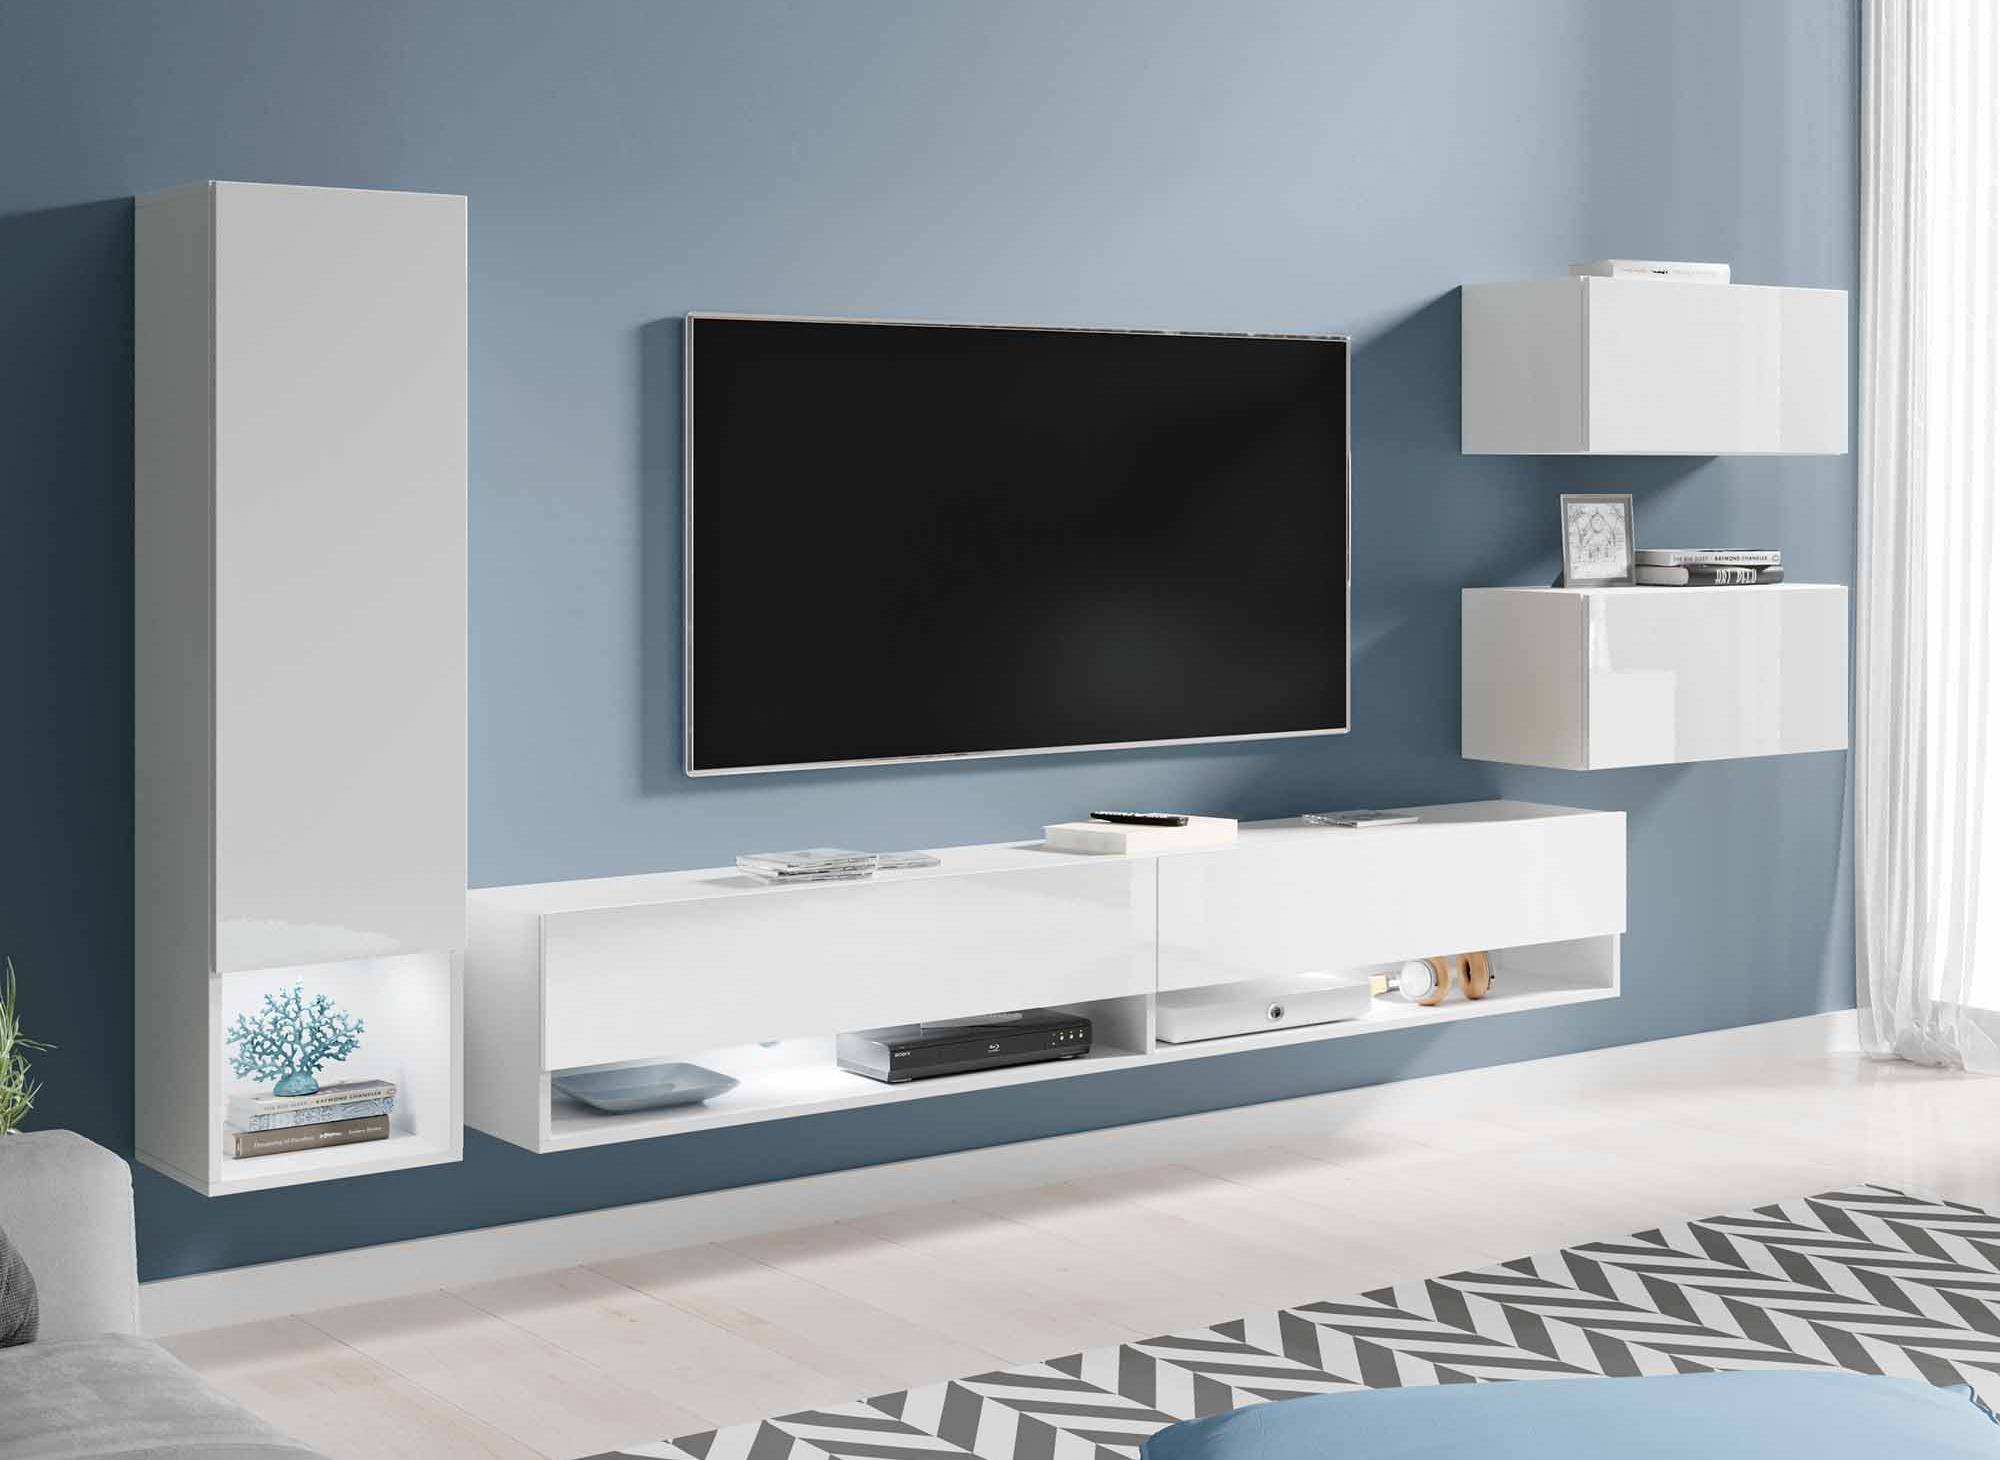 Meuble TV mural blanc et bois avec éclairage led blanc de salon moderne